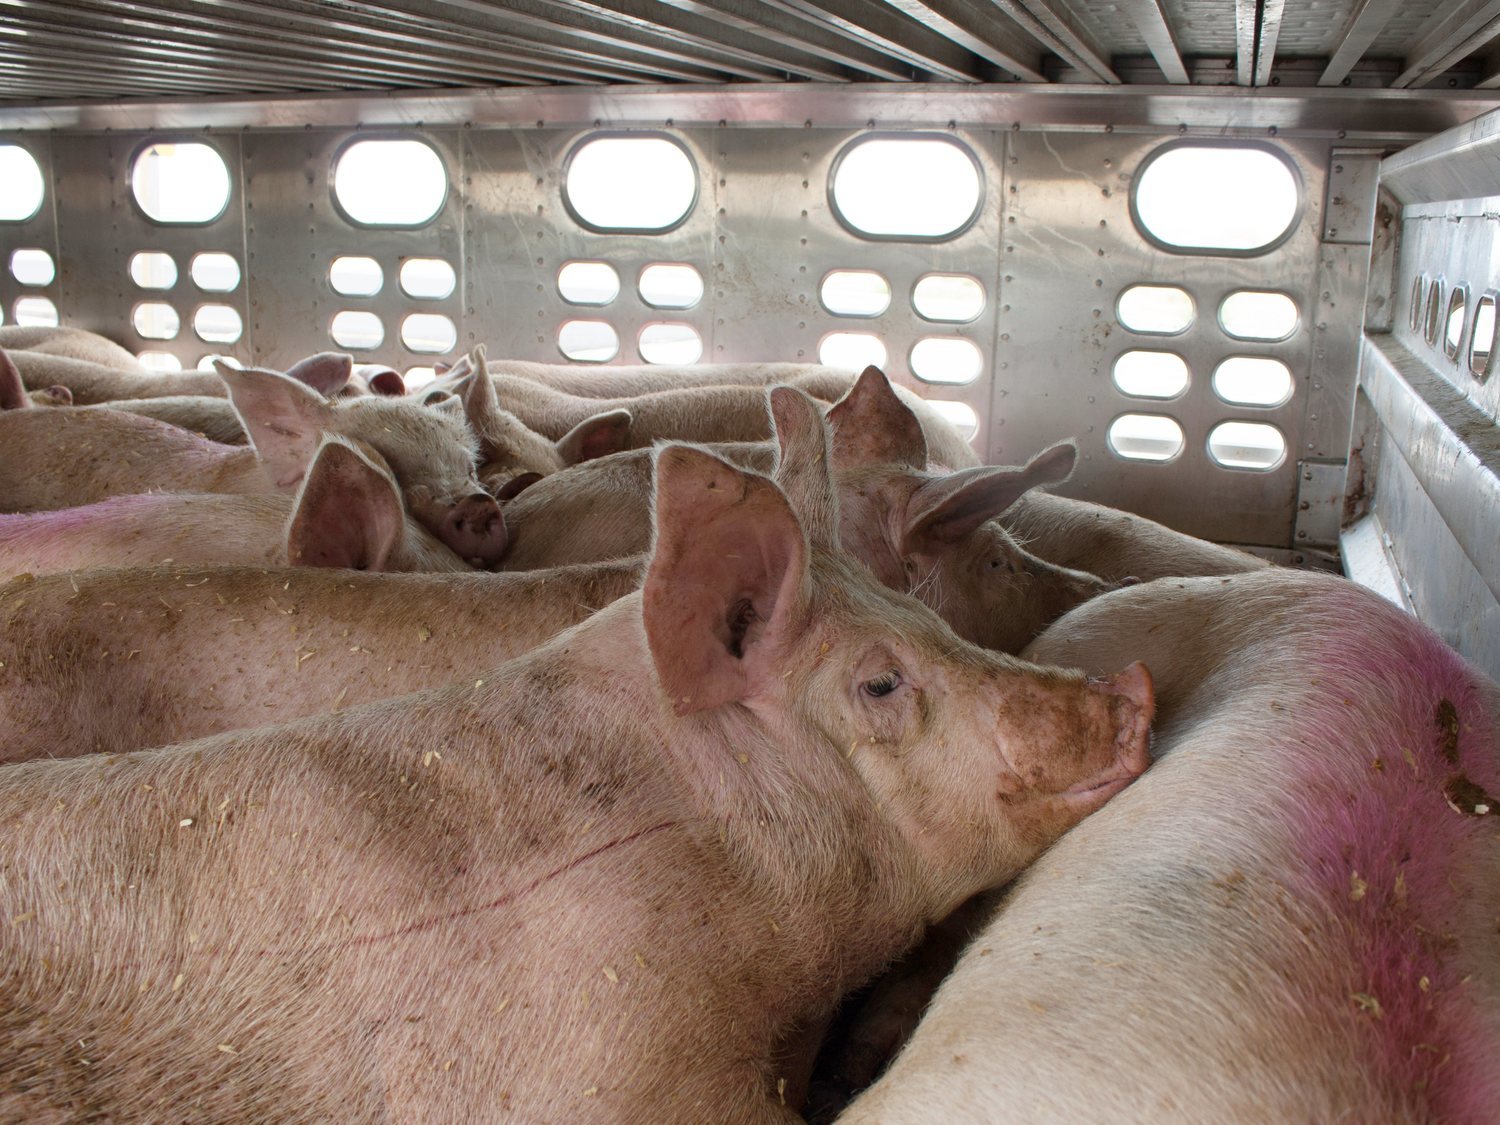 Vigilia vegana: así despiden a los animales que van a ser sacrificados en el matadero